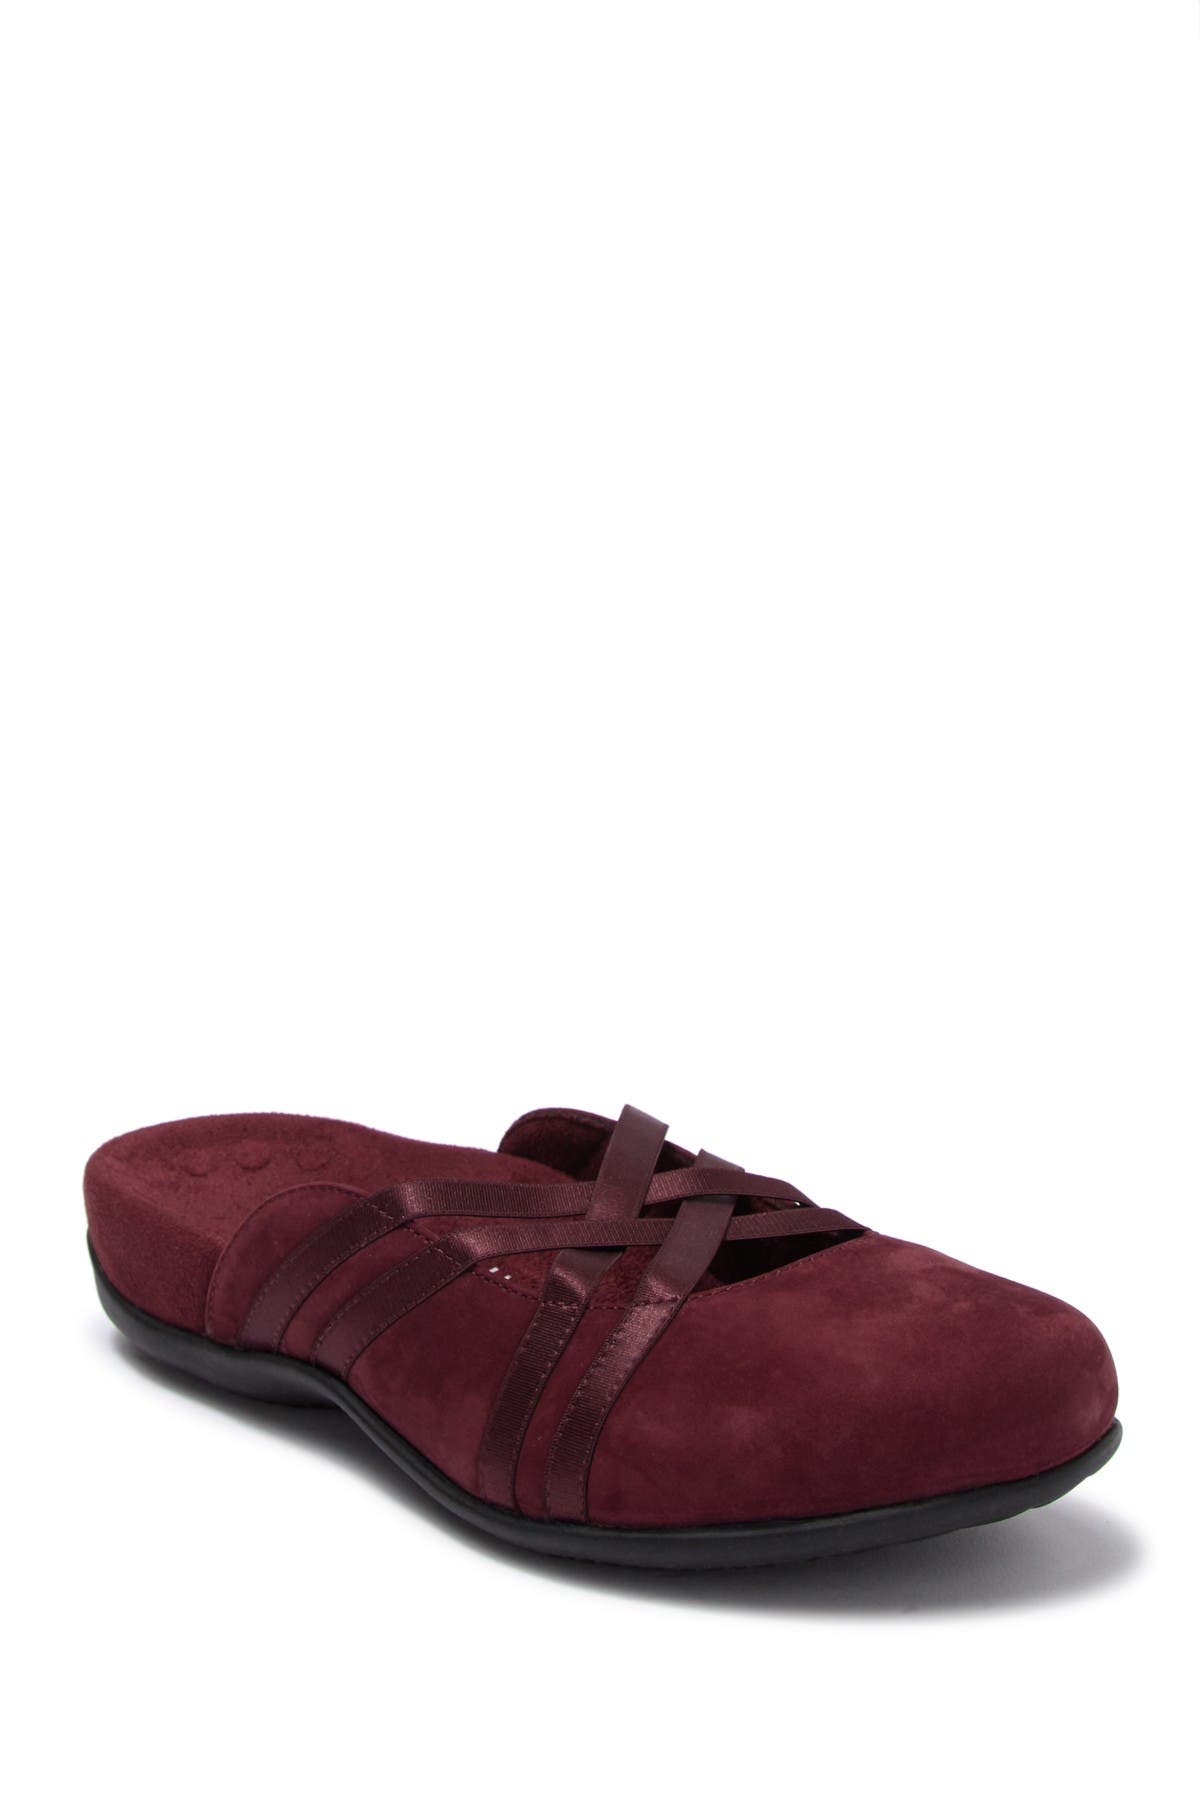 vionic mule shoes